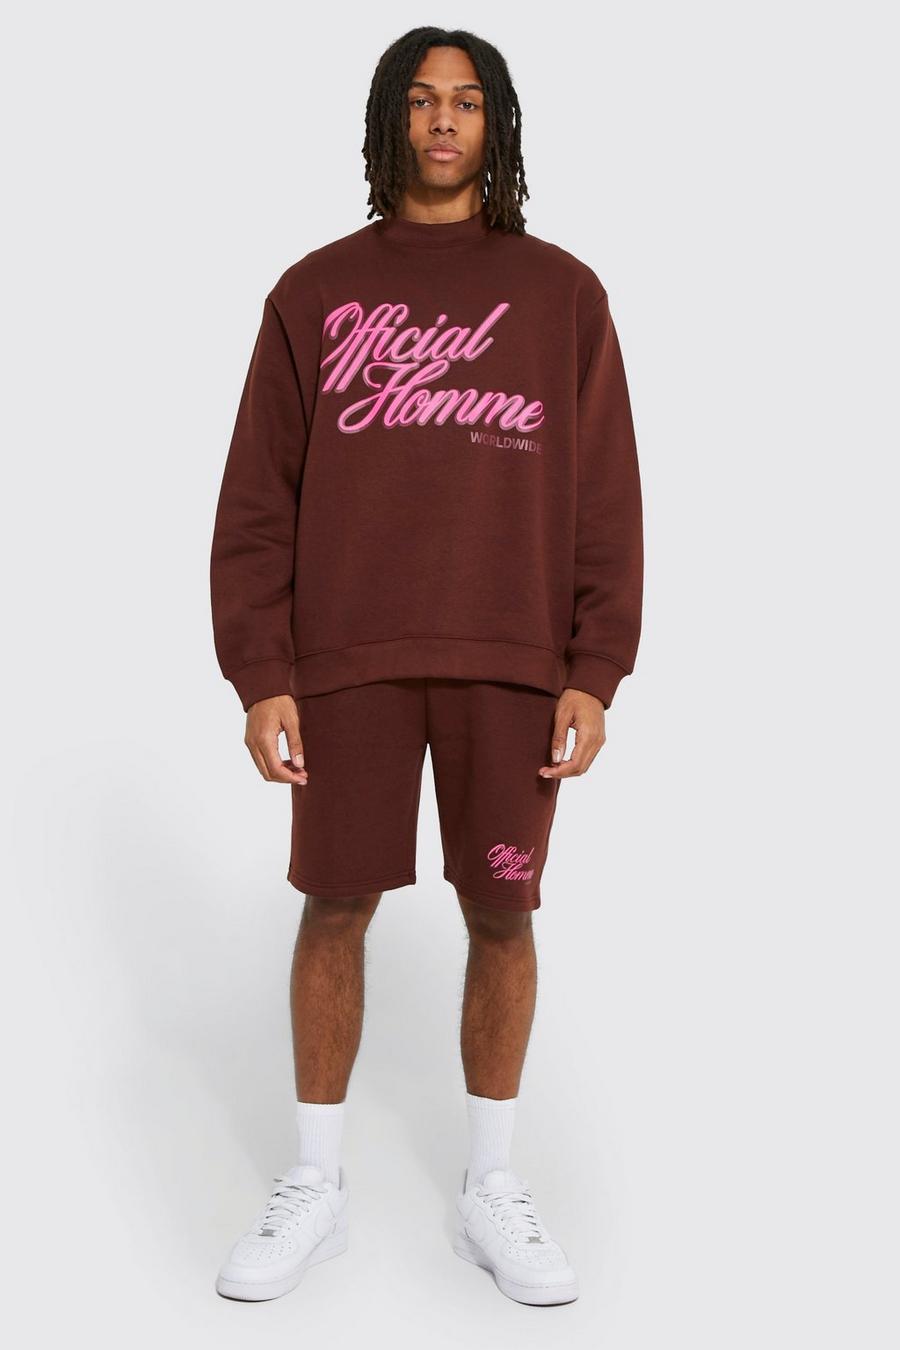 Chocolate marron Oversized Homme Sweatshirt Short Tracksuit